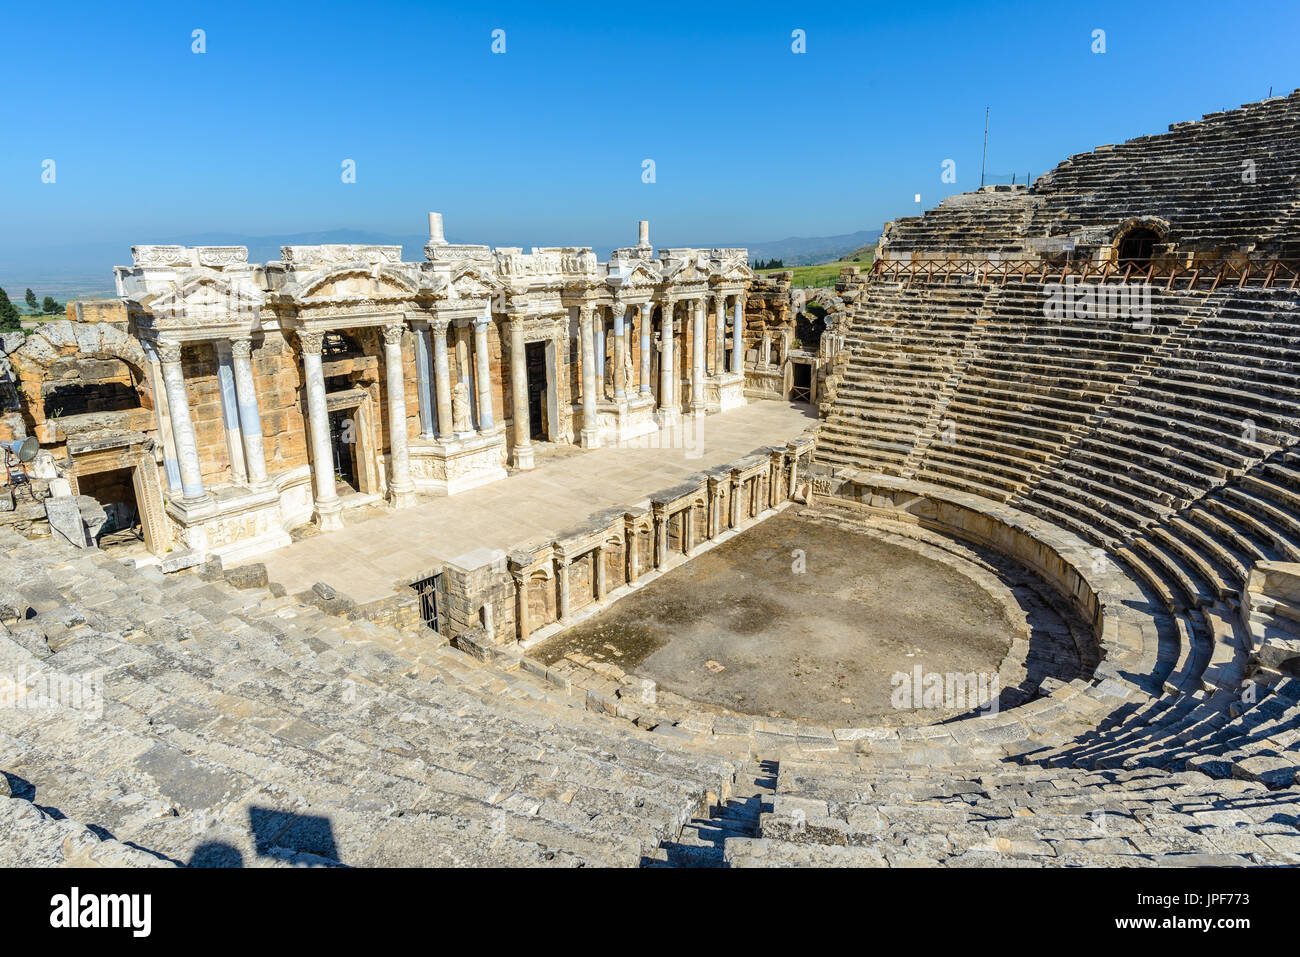 Amphitheater of Hierapolis, Turkey Stock Photo